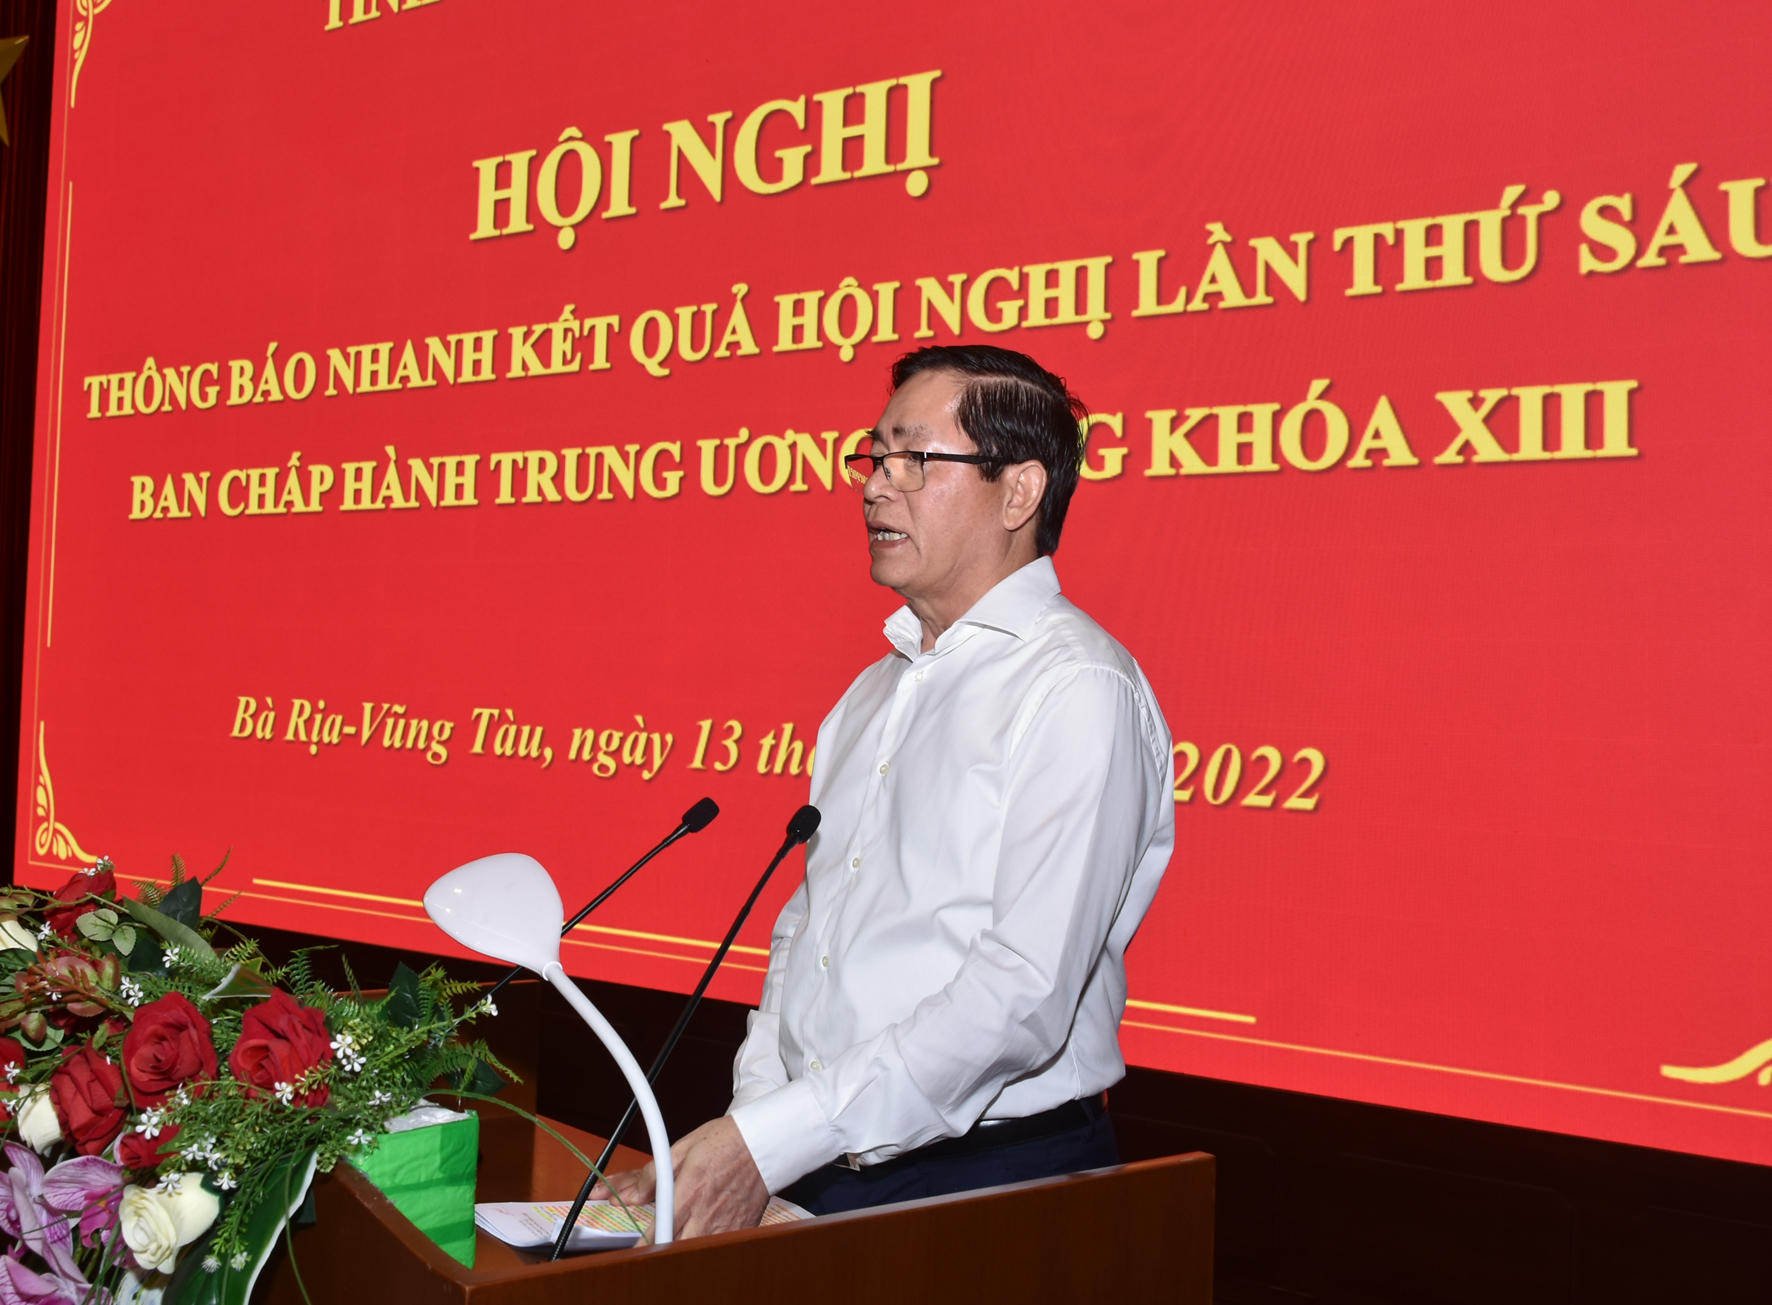 Ông Phạm Viết Thanh, Ủy viên Trung ương Đảng, Bí thư Tỉnh ủy, Chủ tịch HĐND tỉnh Thông báo nhanh kết quả hội nghị.